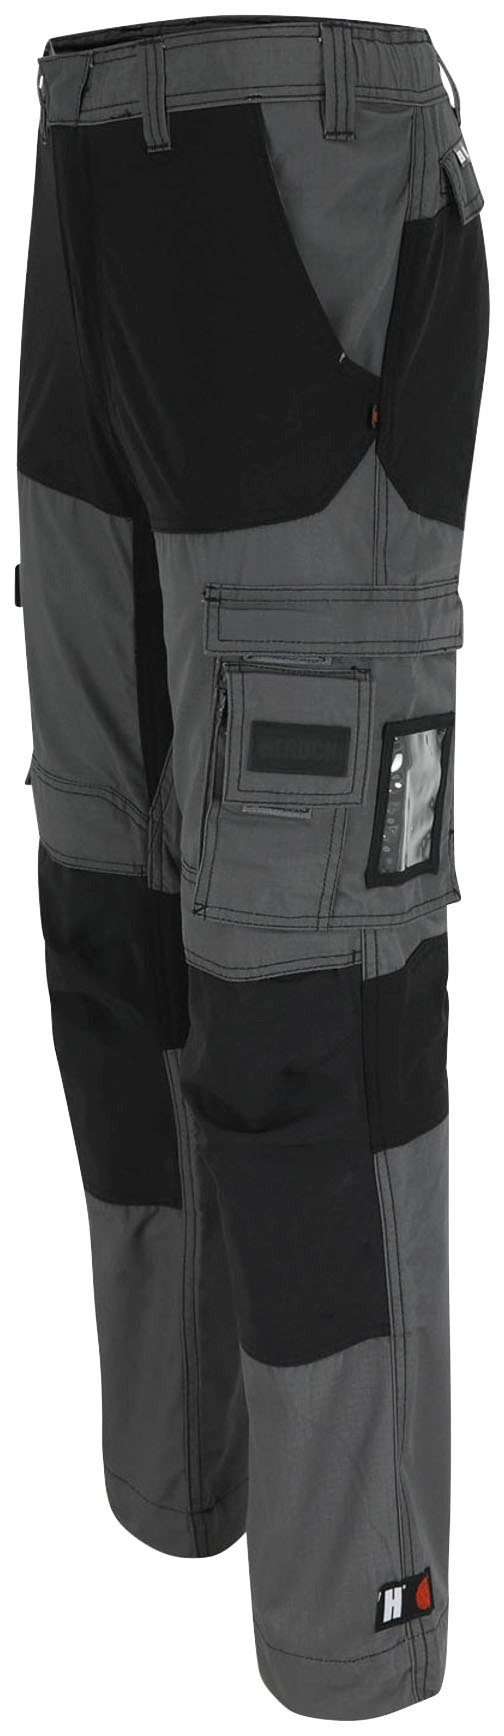 Knopf, Hector Herock grau Hoses Arbeitshose verdeckter verstärkte Multi-Pocket, Knietaschen 4-Wege-Stretch,